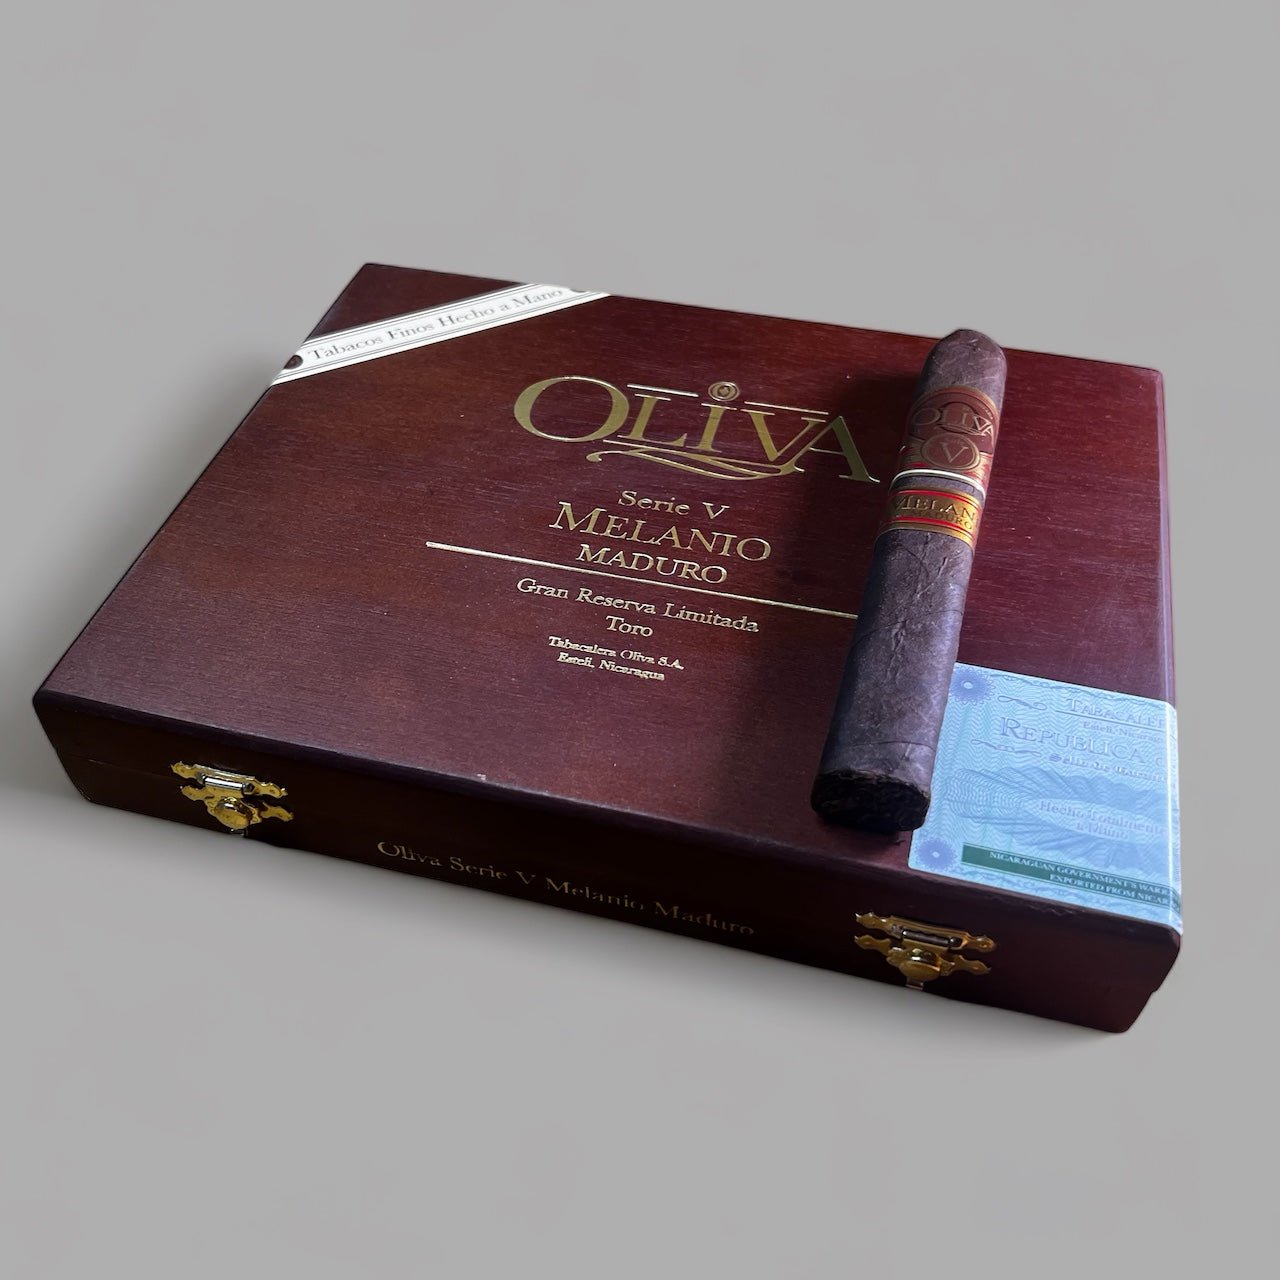 Oliva Serie V Melanio Maduro Toro - Cigar 30